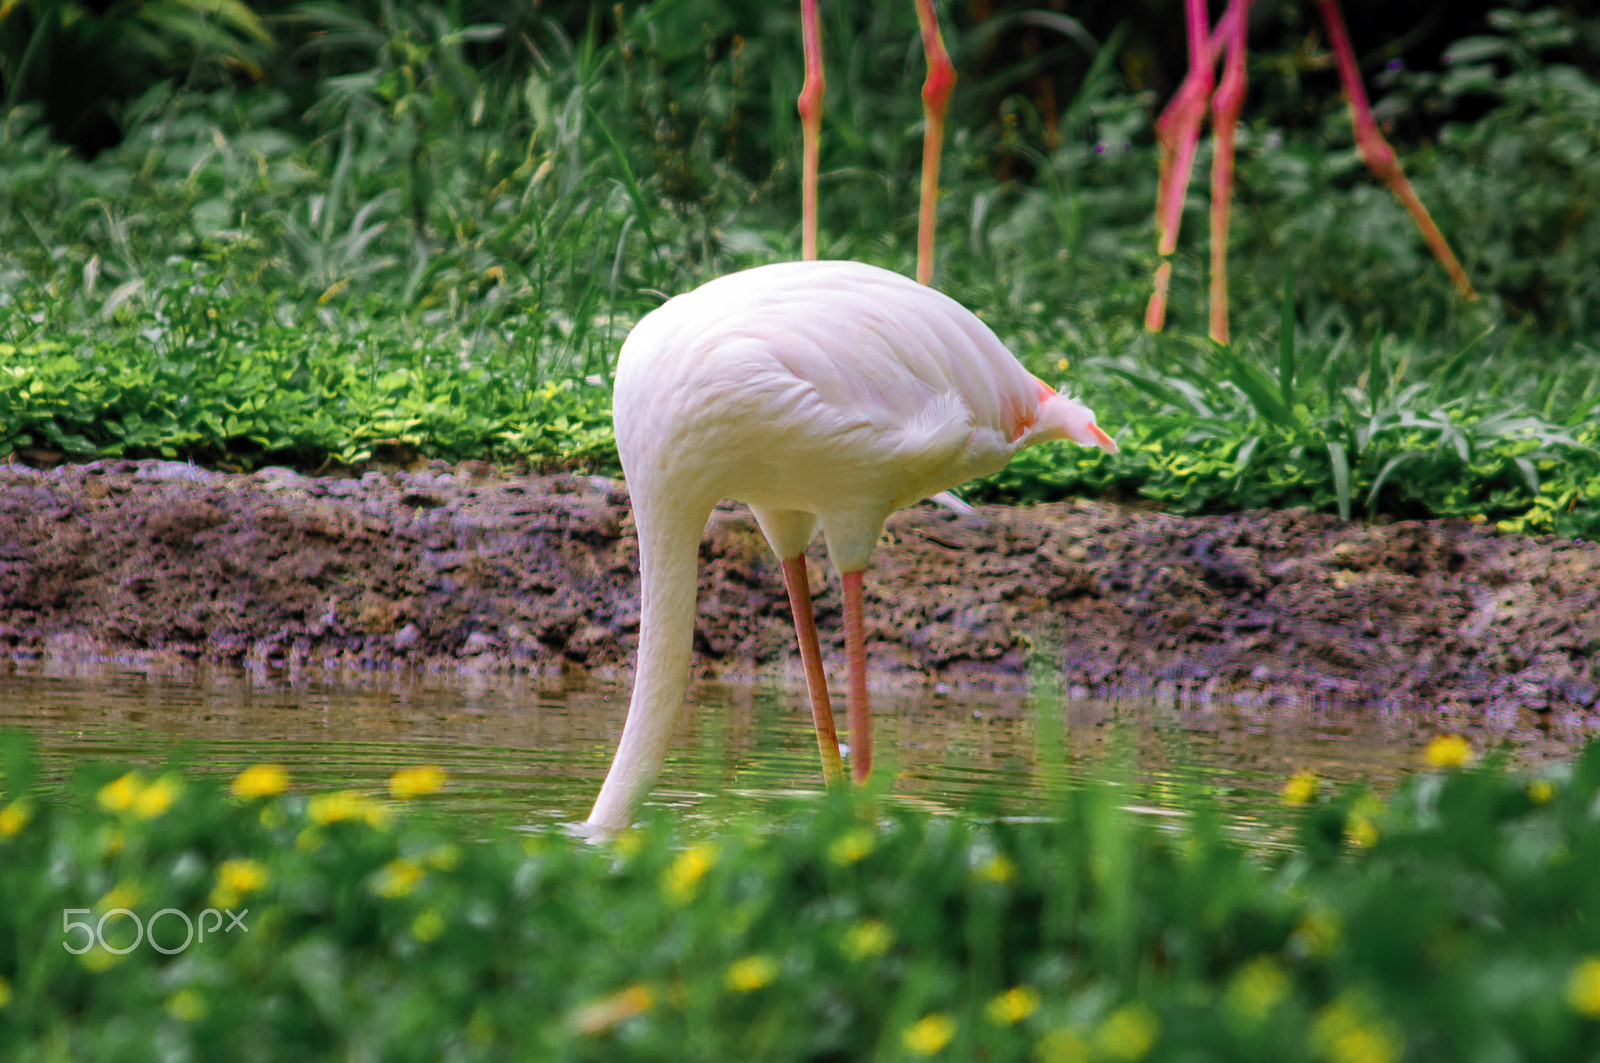 AF Zoom-Nikkor 75-300mm f/4.5-5.6 sample photo. Flamingo photography